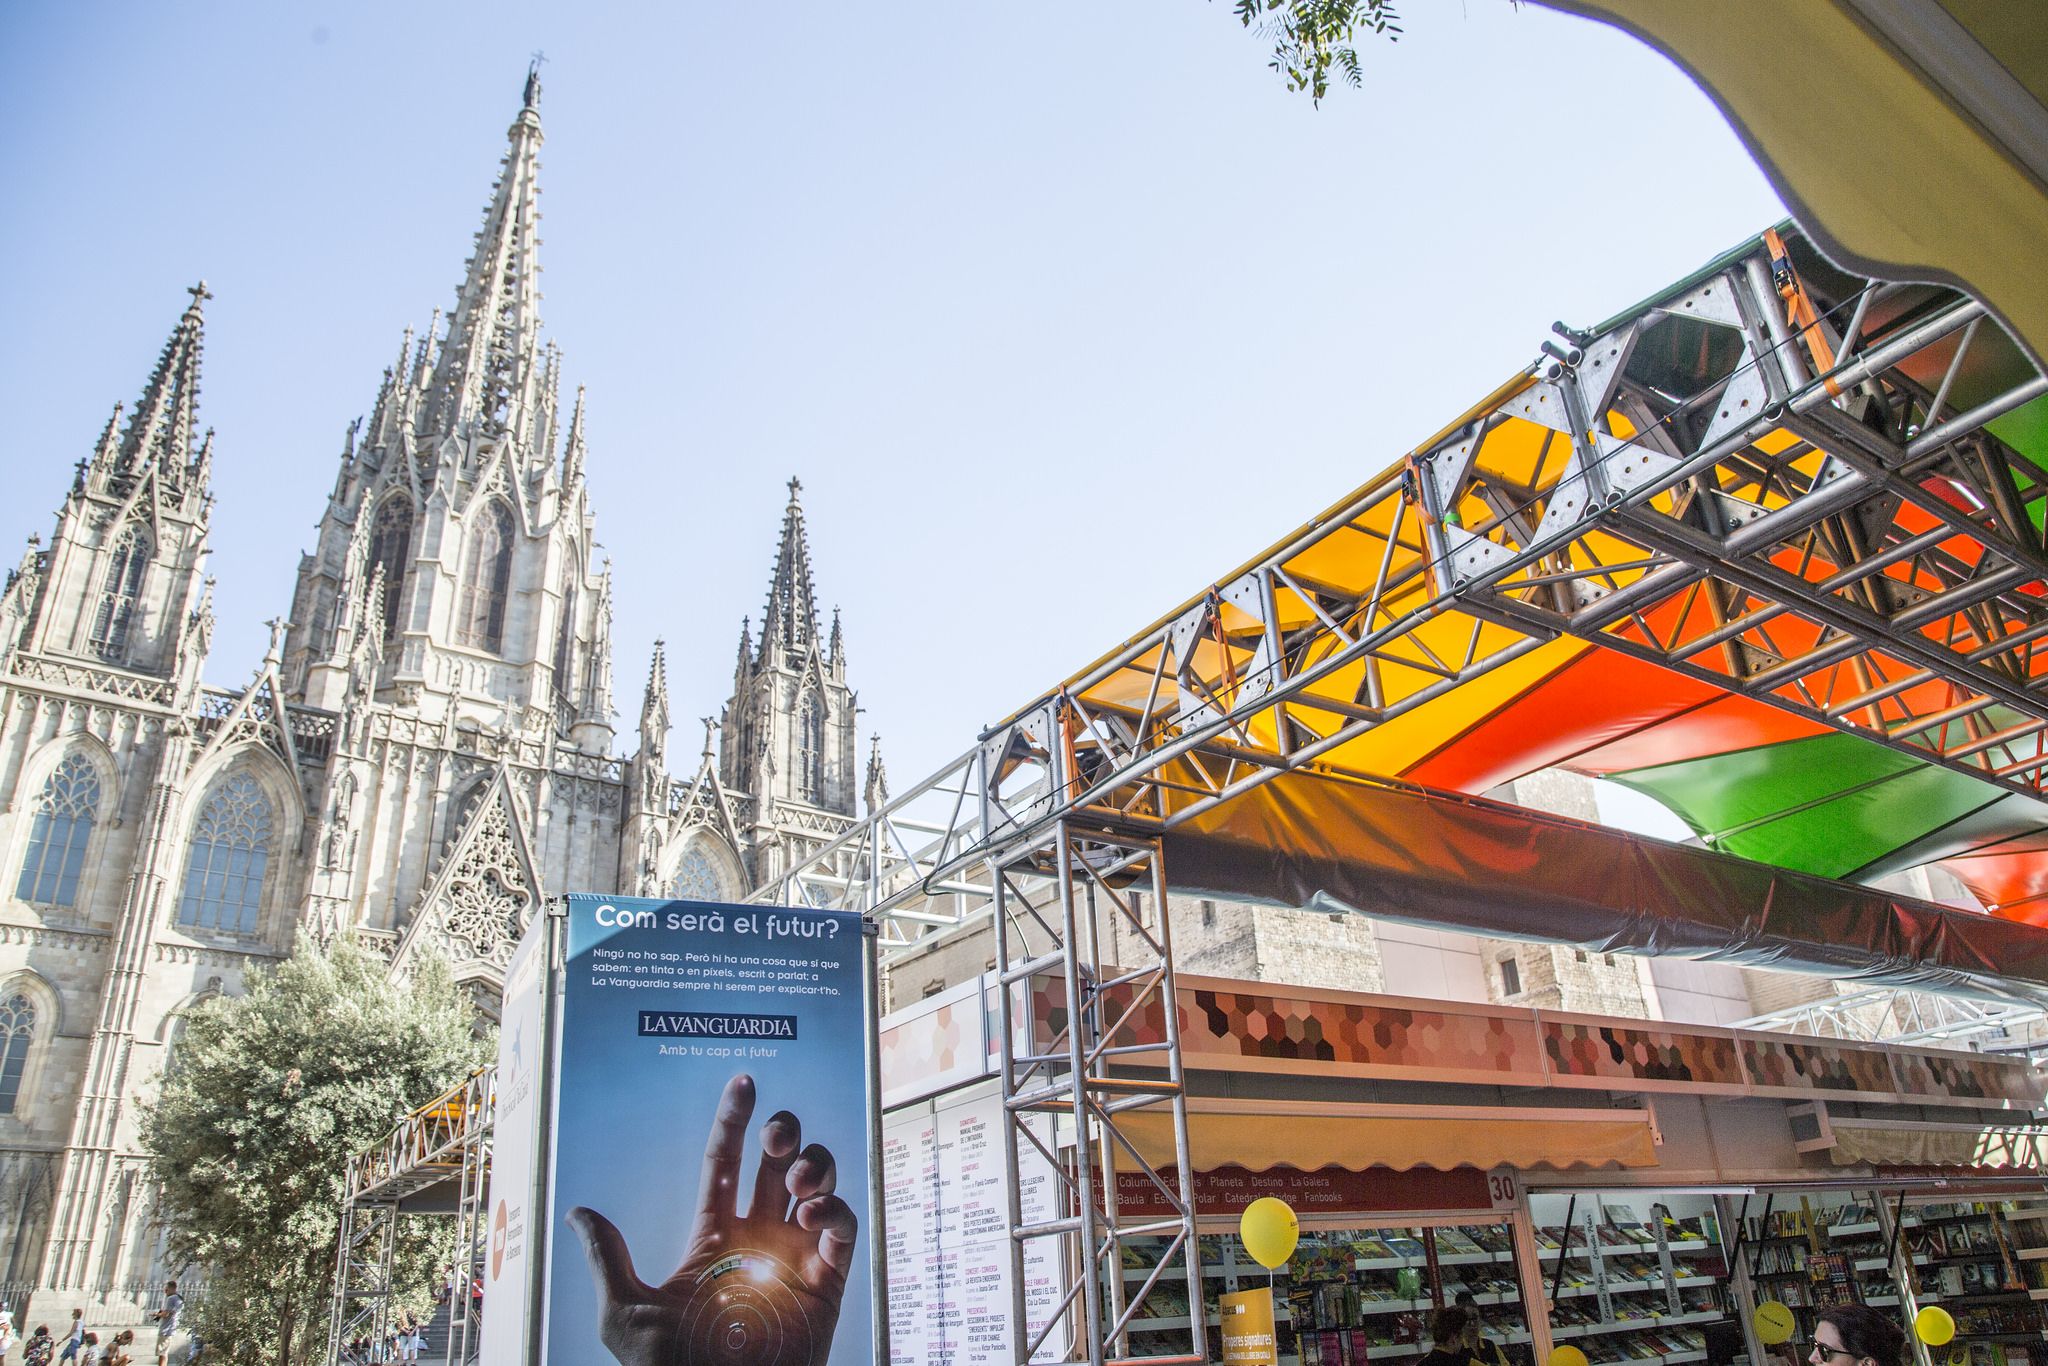 El llibre en català surt al carrer a la recerca de lectors